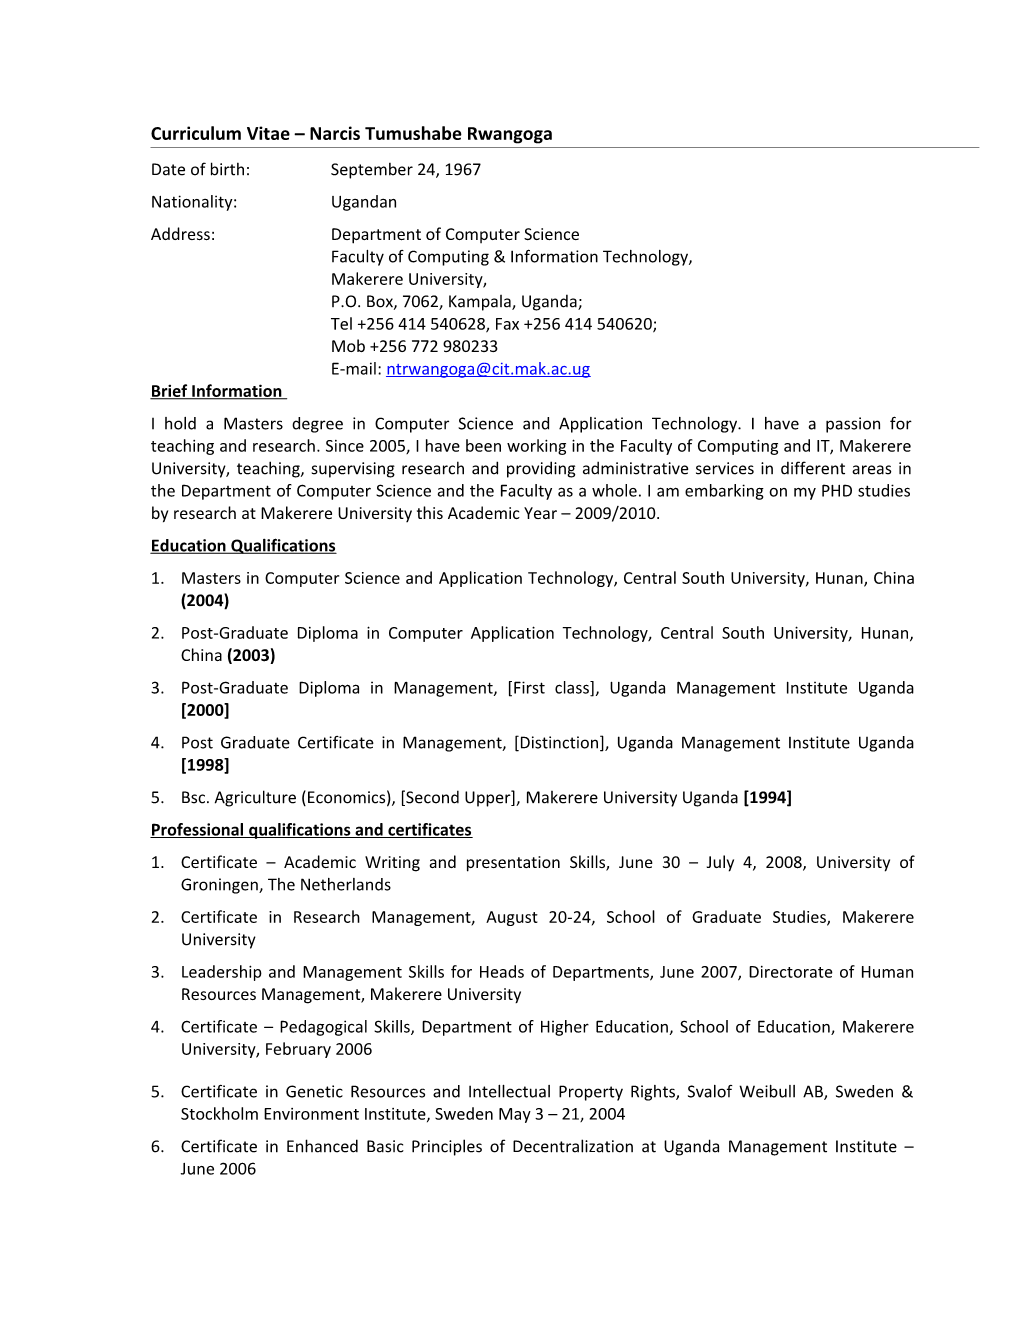 CV for Narcis Tumushabe